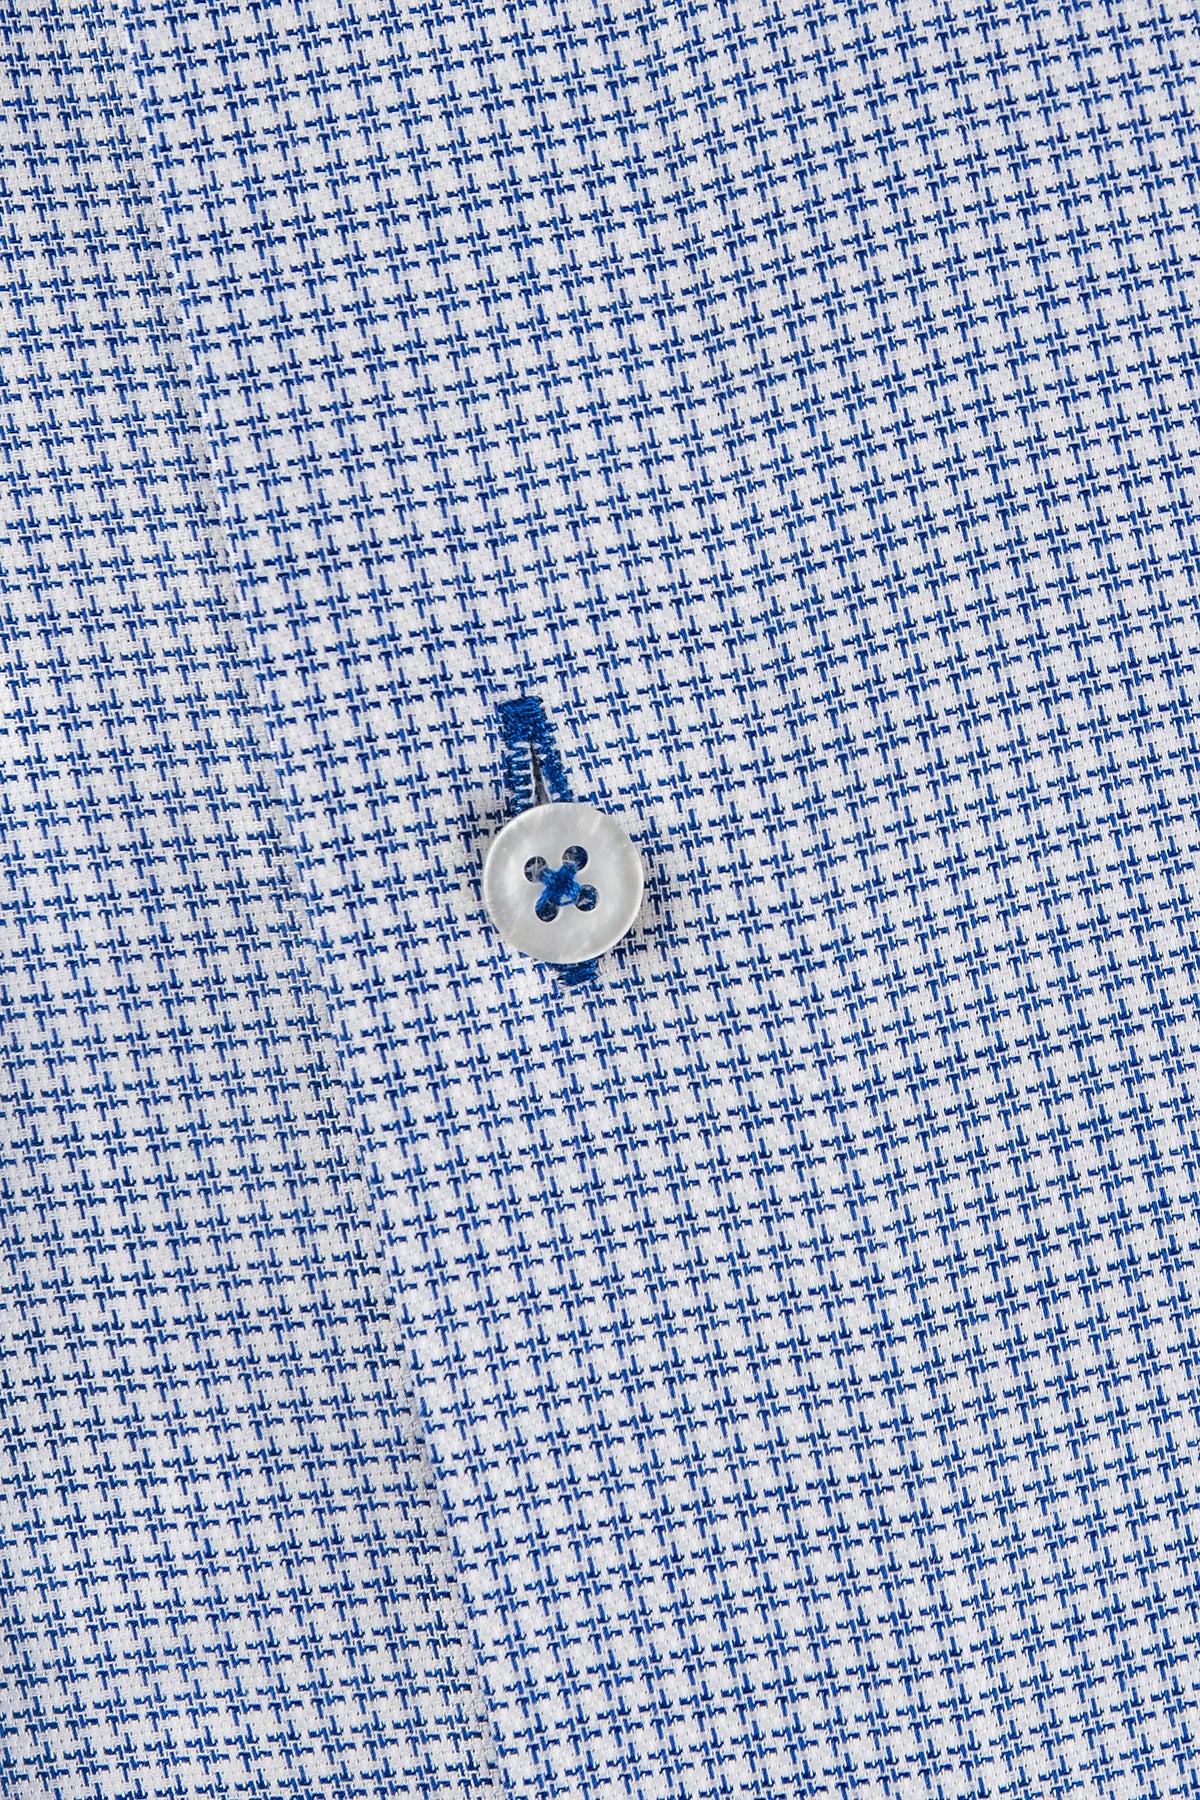 Blue houndstooth button down regular fit shirt